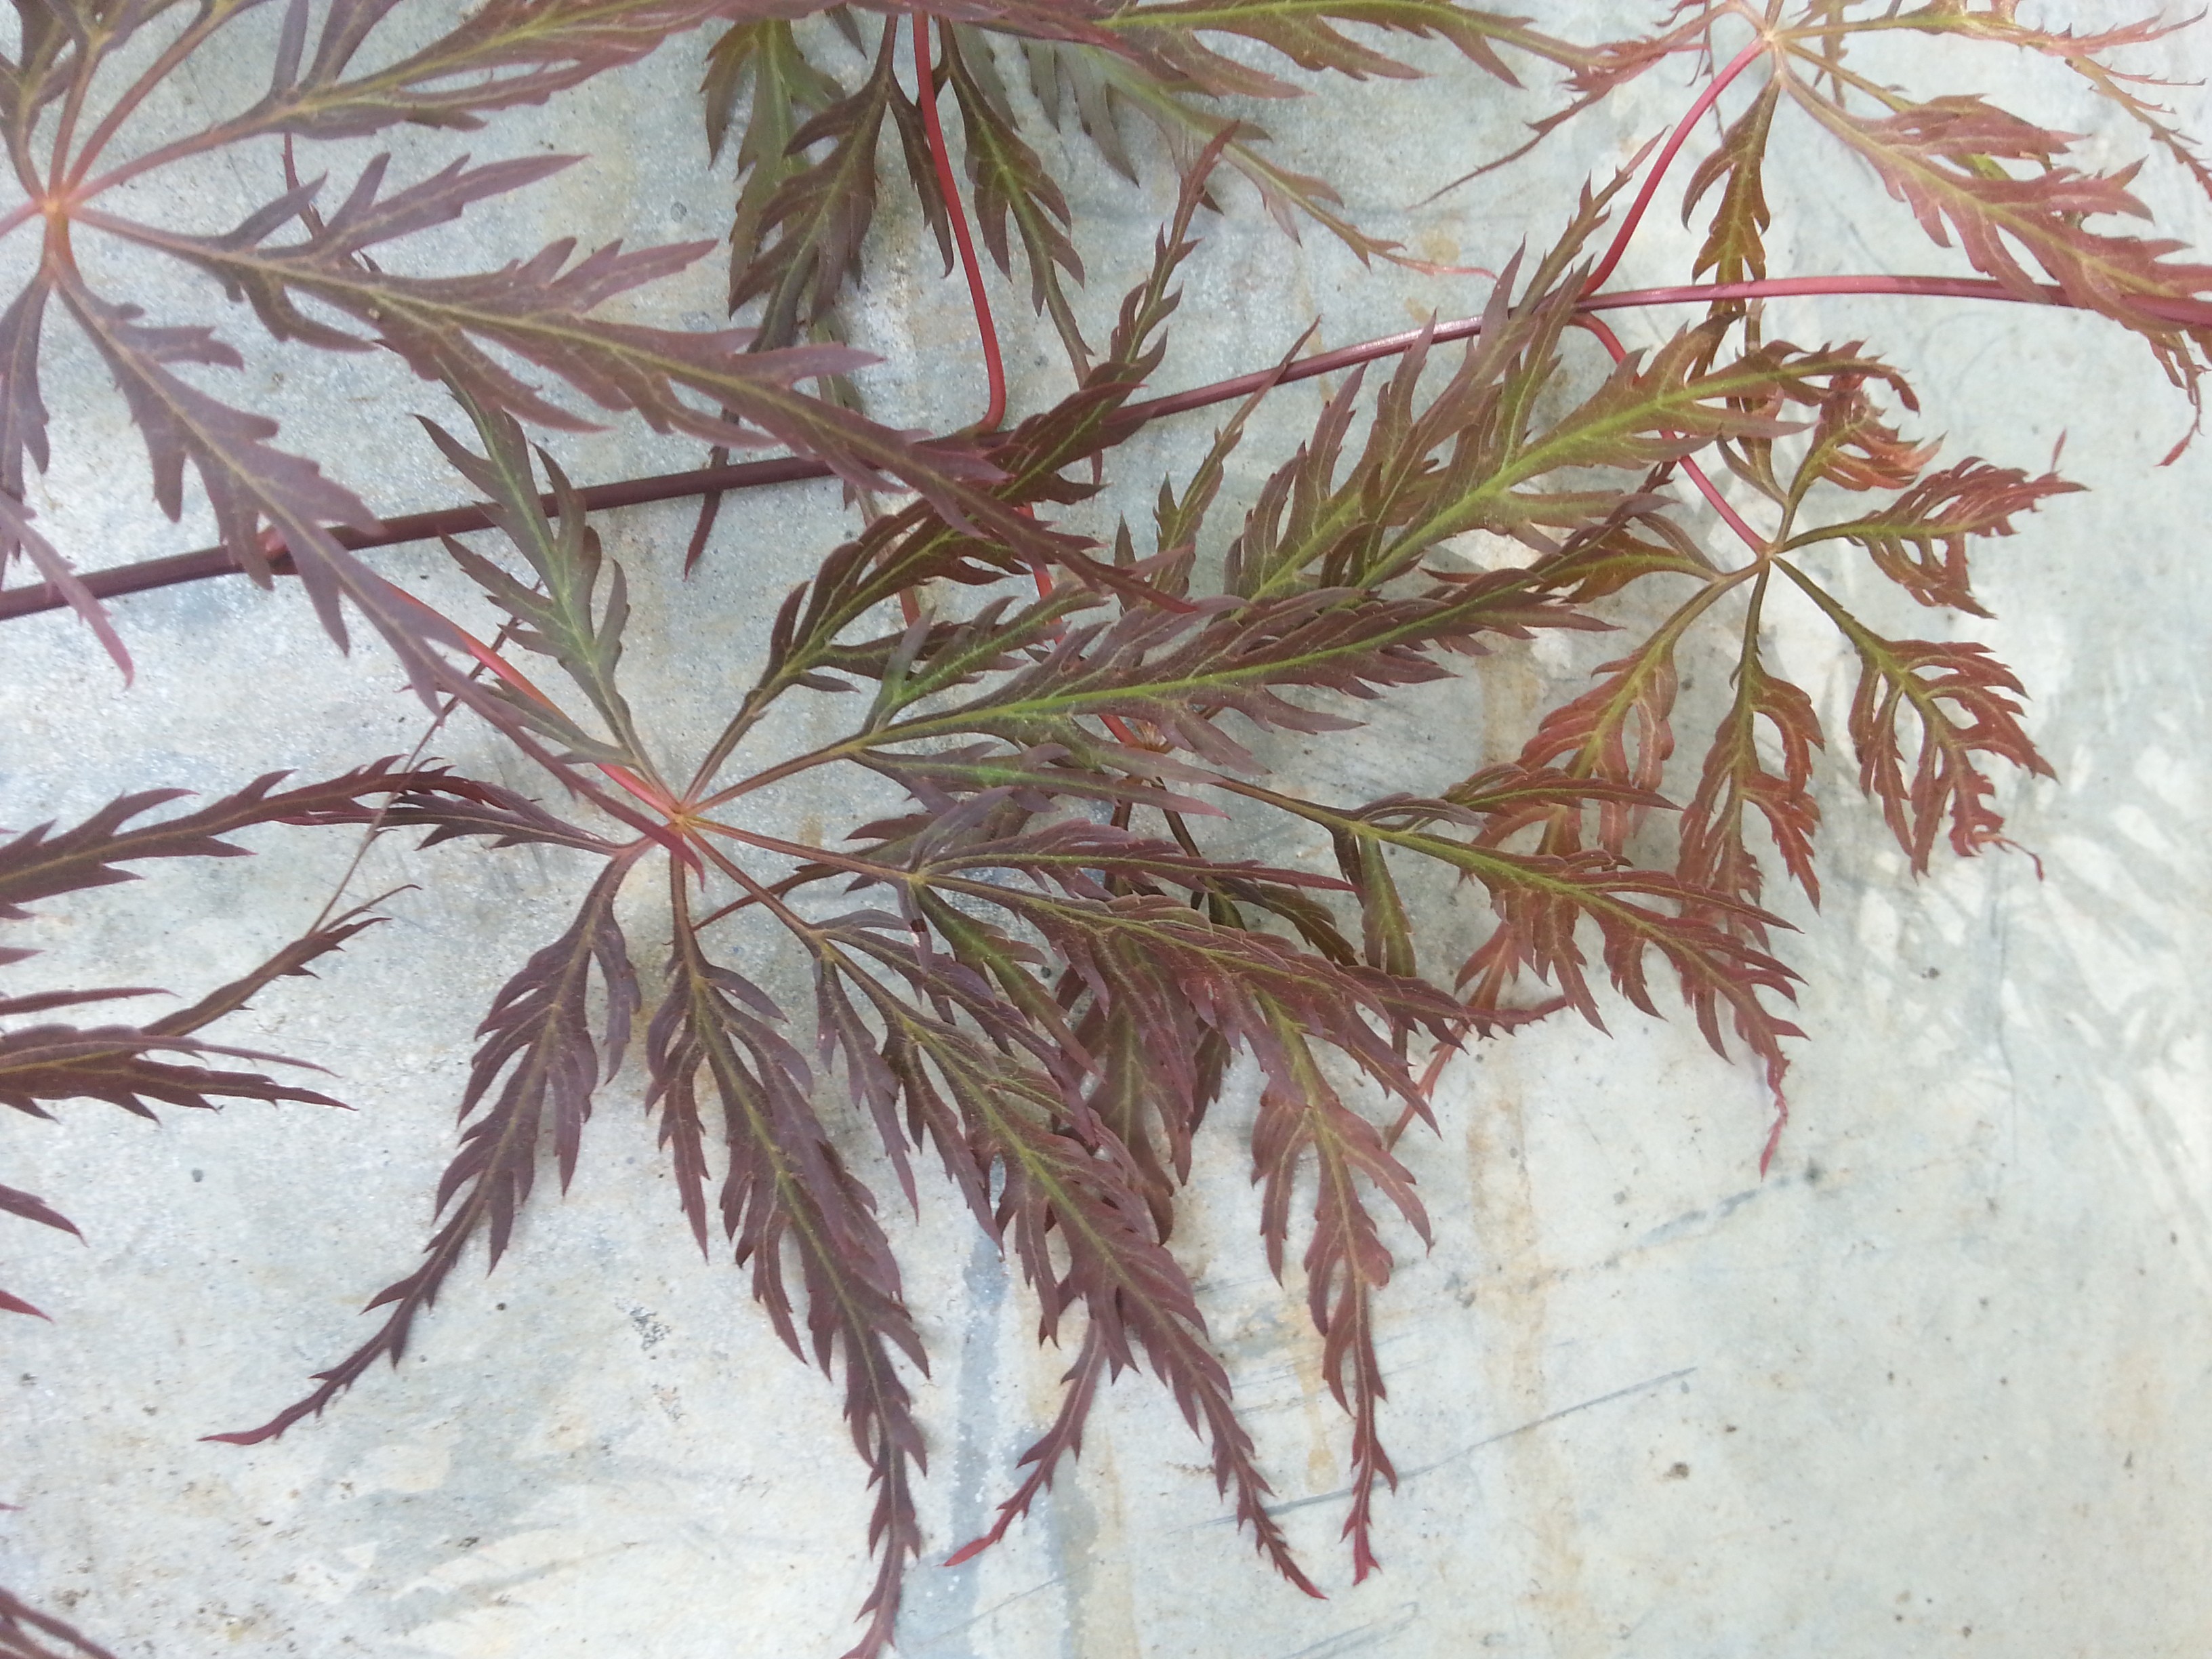 Acer palmatum 'Inaba-shidare'